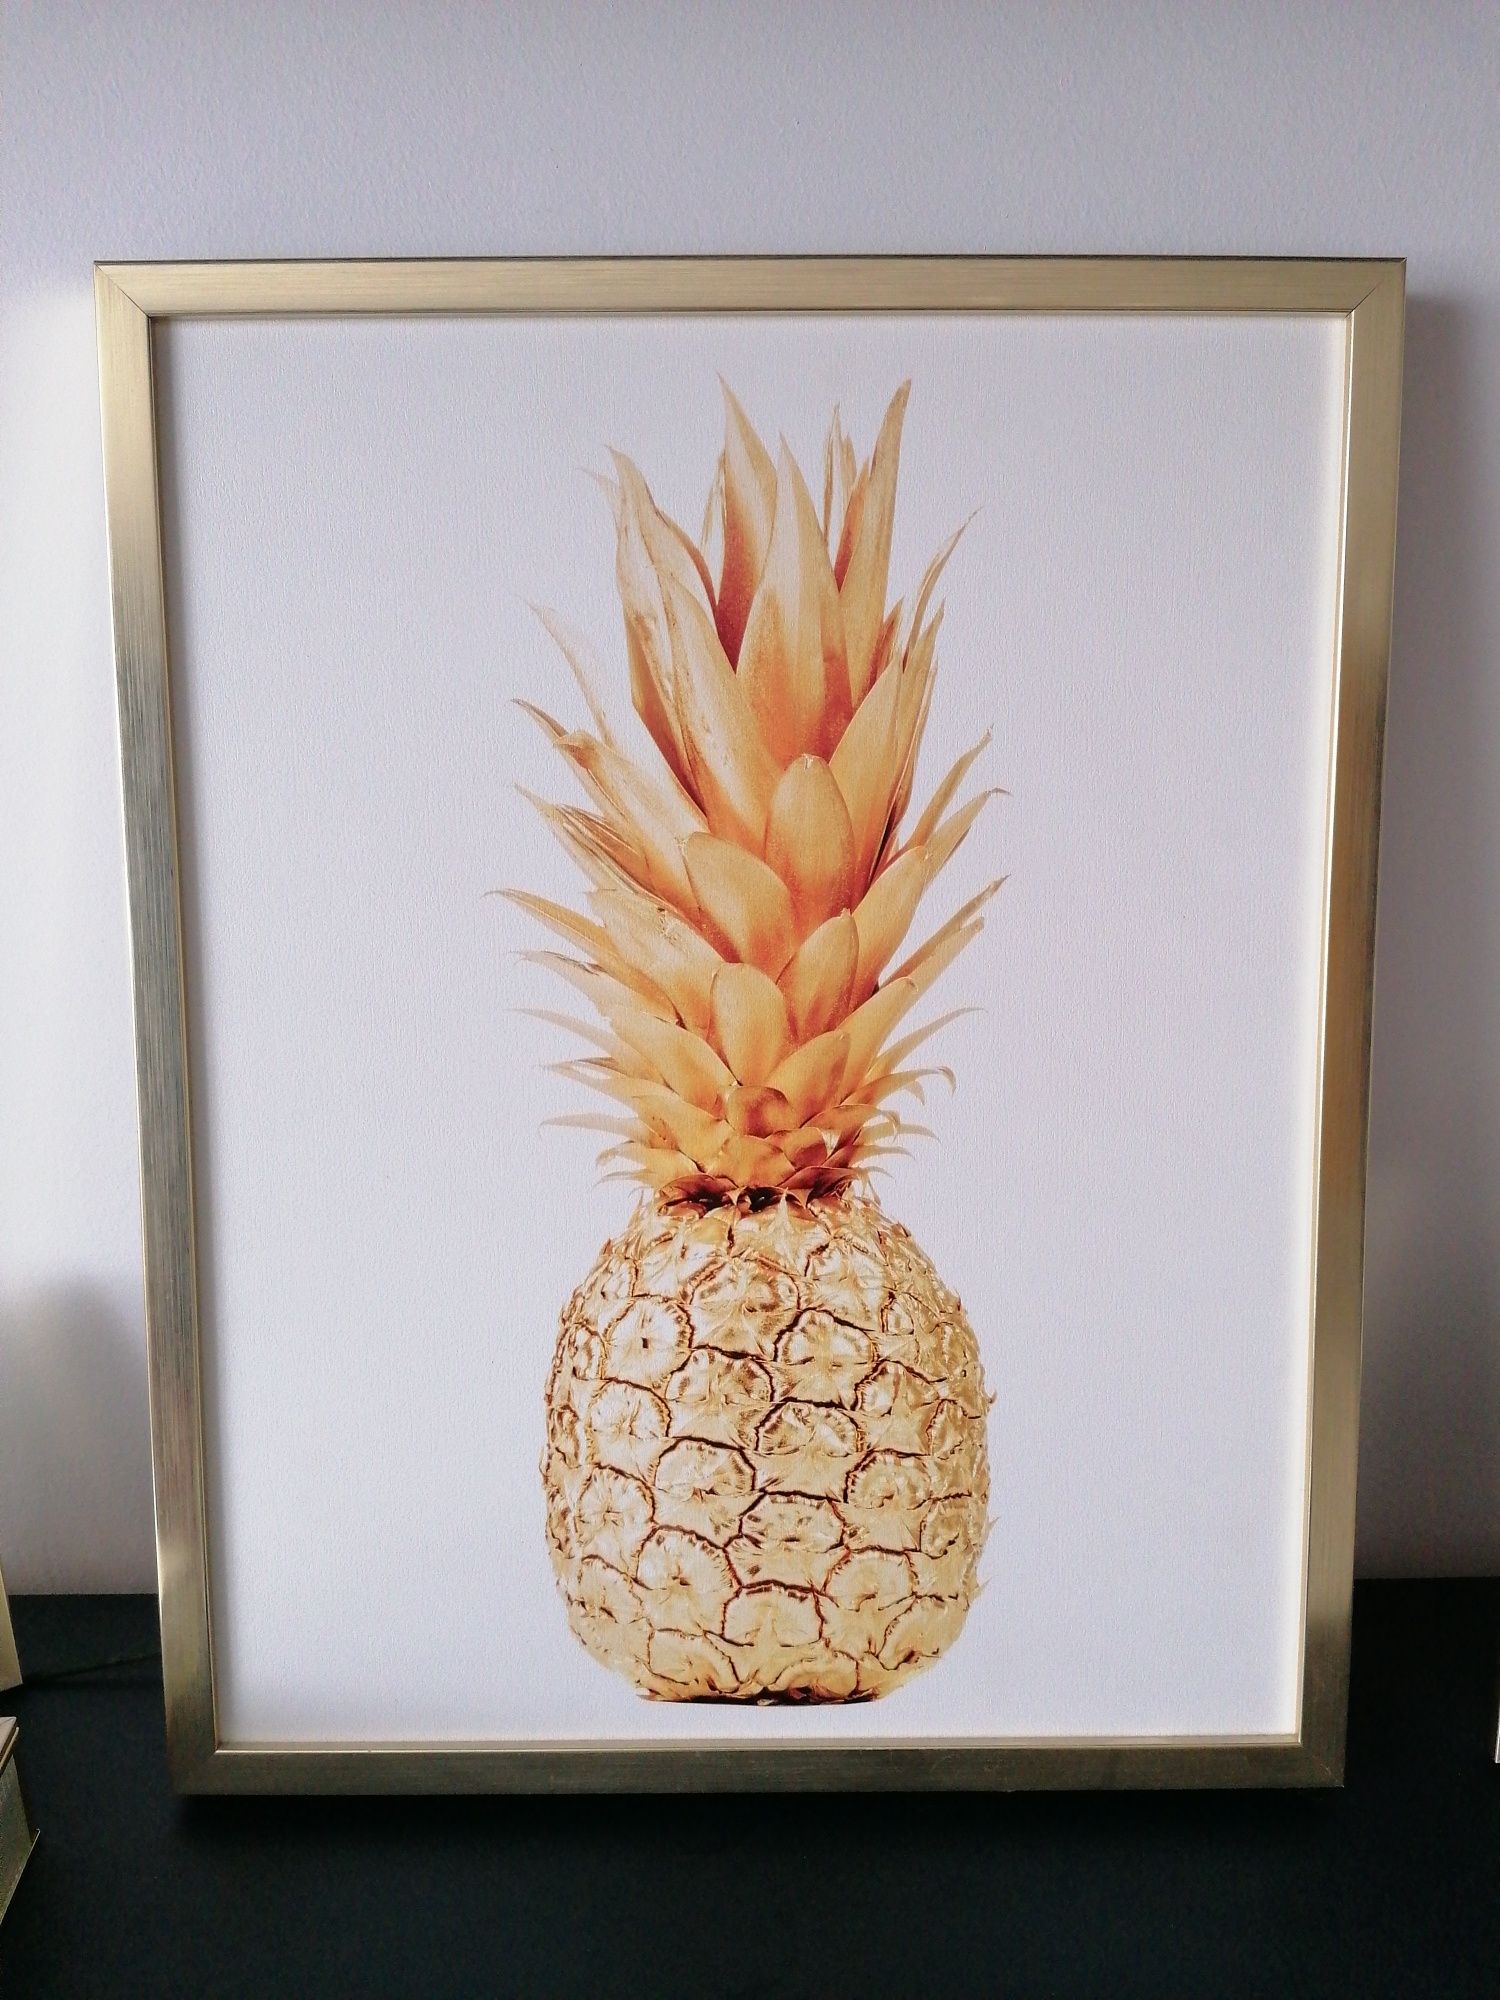 Obraz glamour złoty ananas